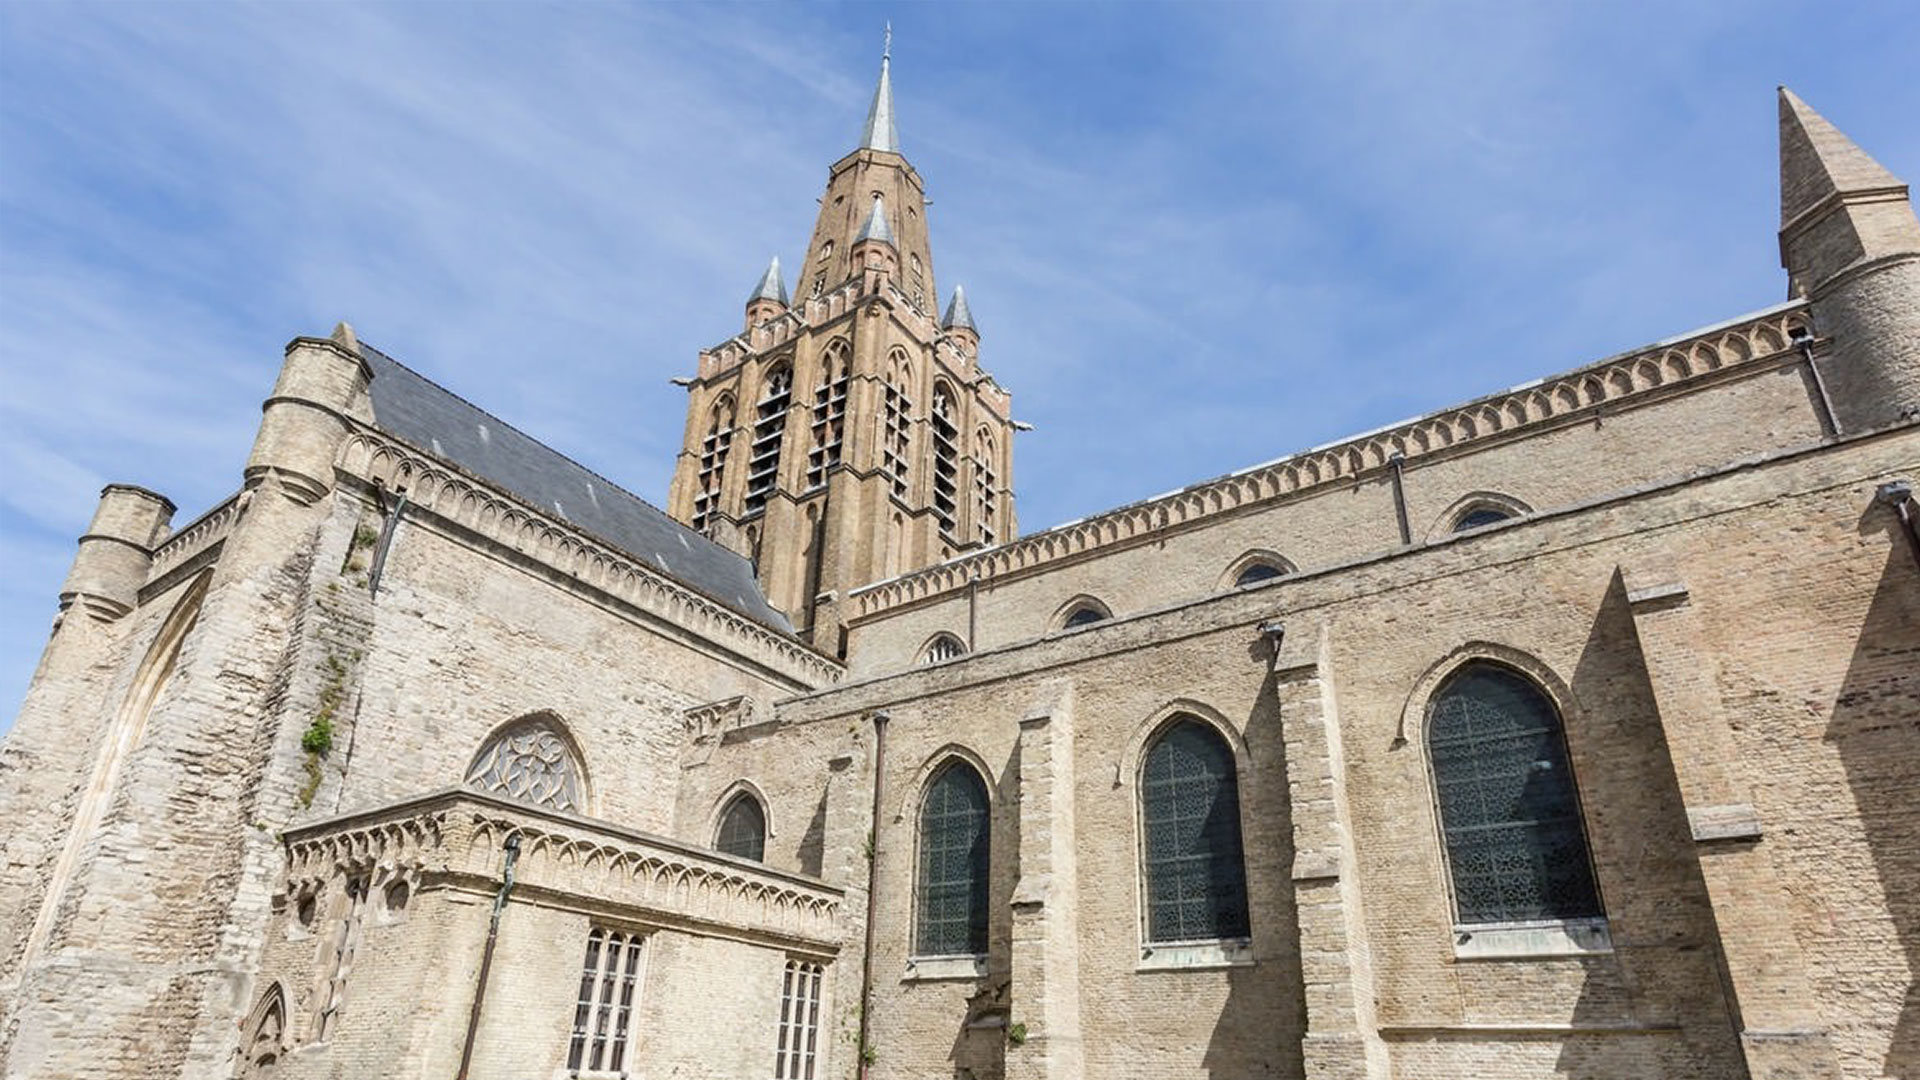 L'église Notre Dame à Calais avec son clocher central emblématique de l'influence anglaise